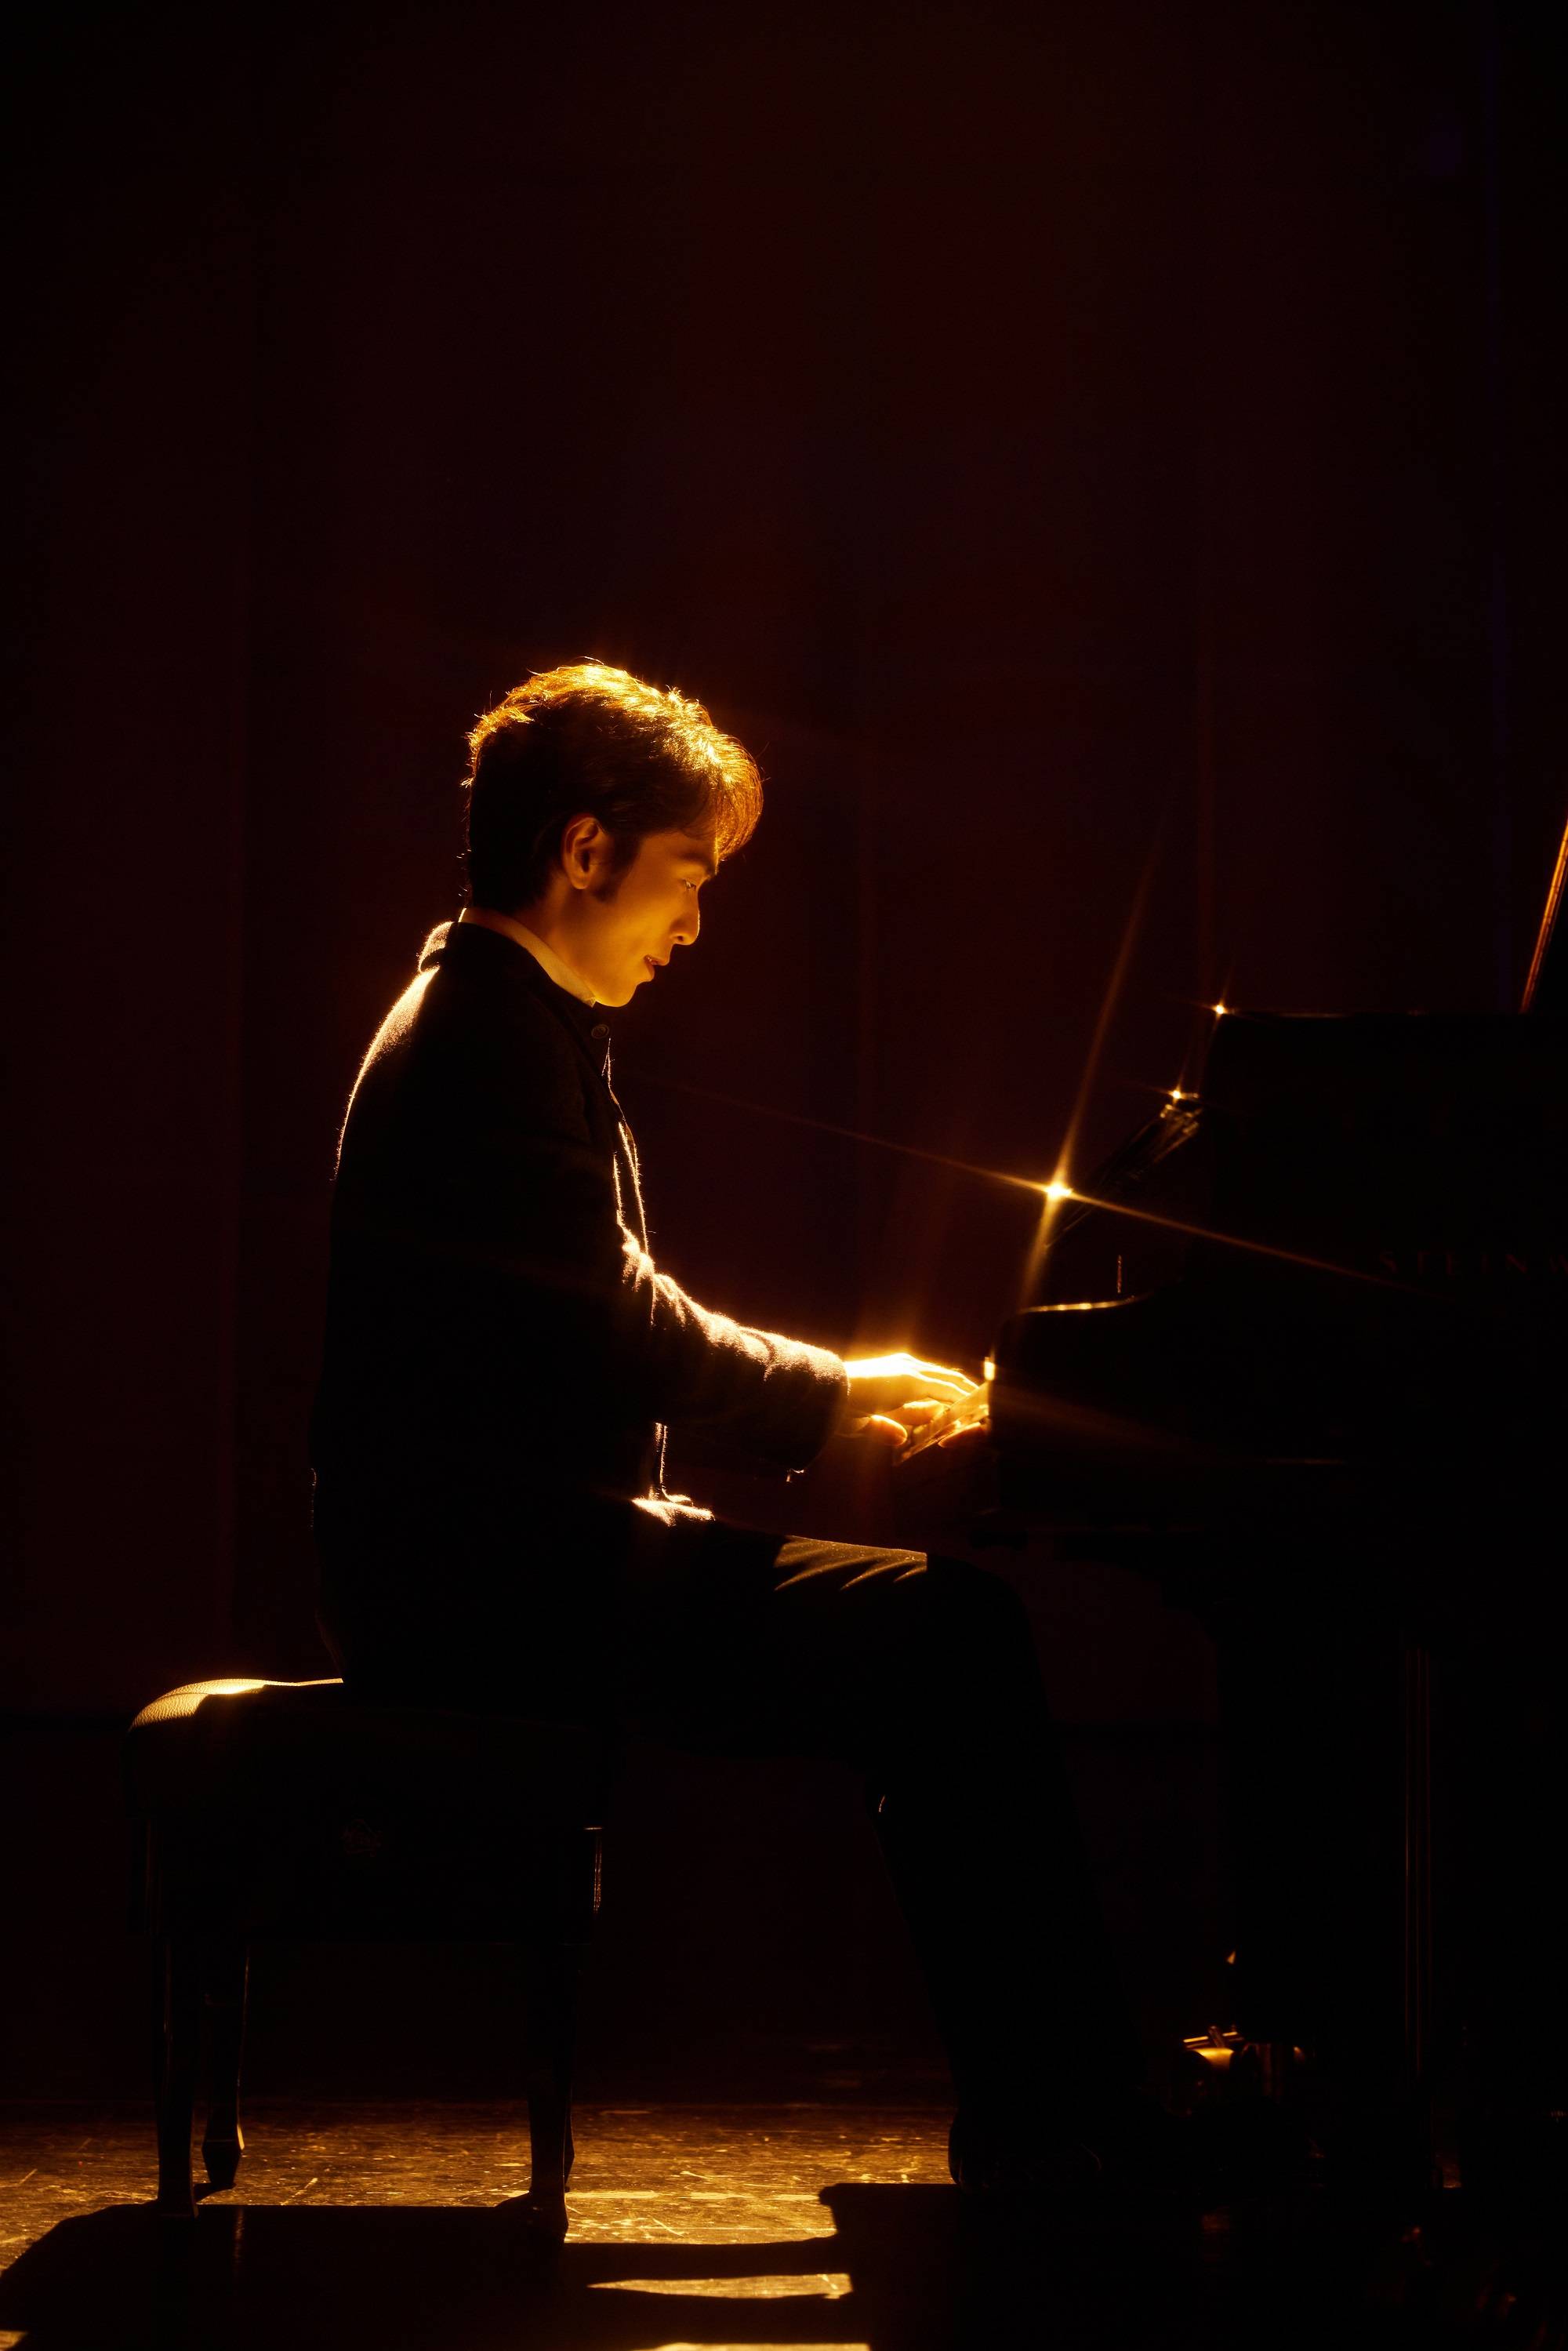 钢琴家吴牧野确认加盟腾讯视频综艺真人秀《五十公里桃花坞-海边》